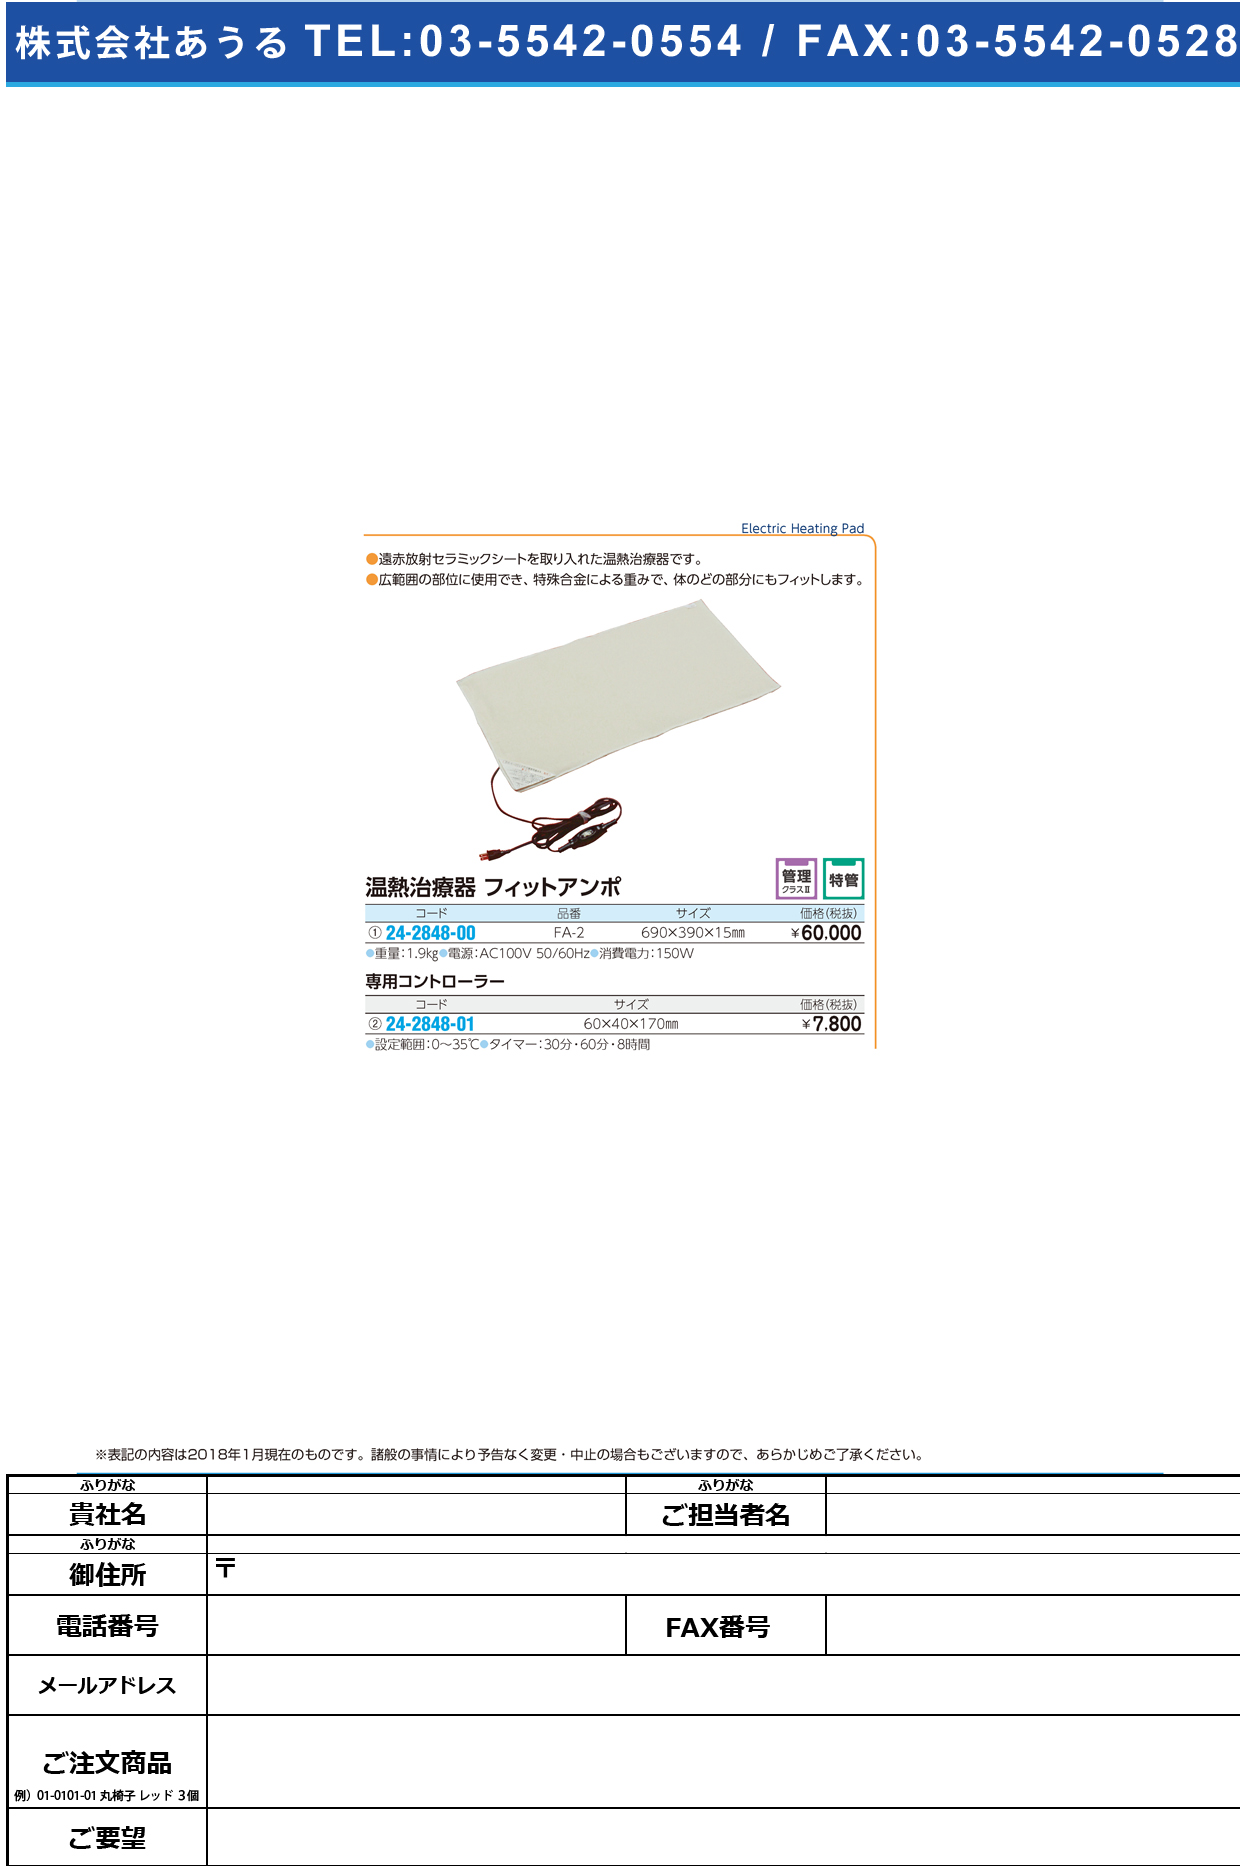 (24-2848-01)フィットアンポ用コントローラー  ﾌｨｯﾄｱﾝﾎﾟﾖｳｺﾝﾄﾛｰﾗｰ【1台単位】【2018年カタログ商品】